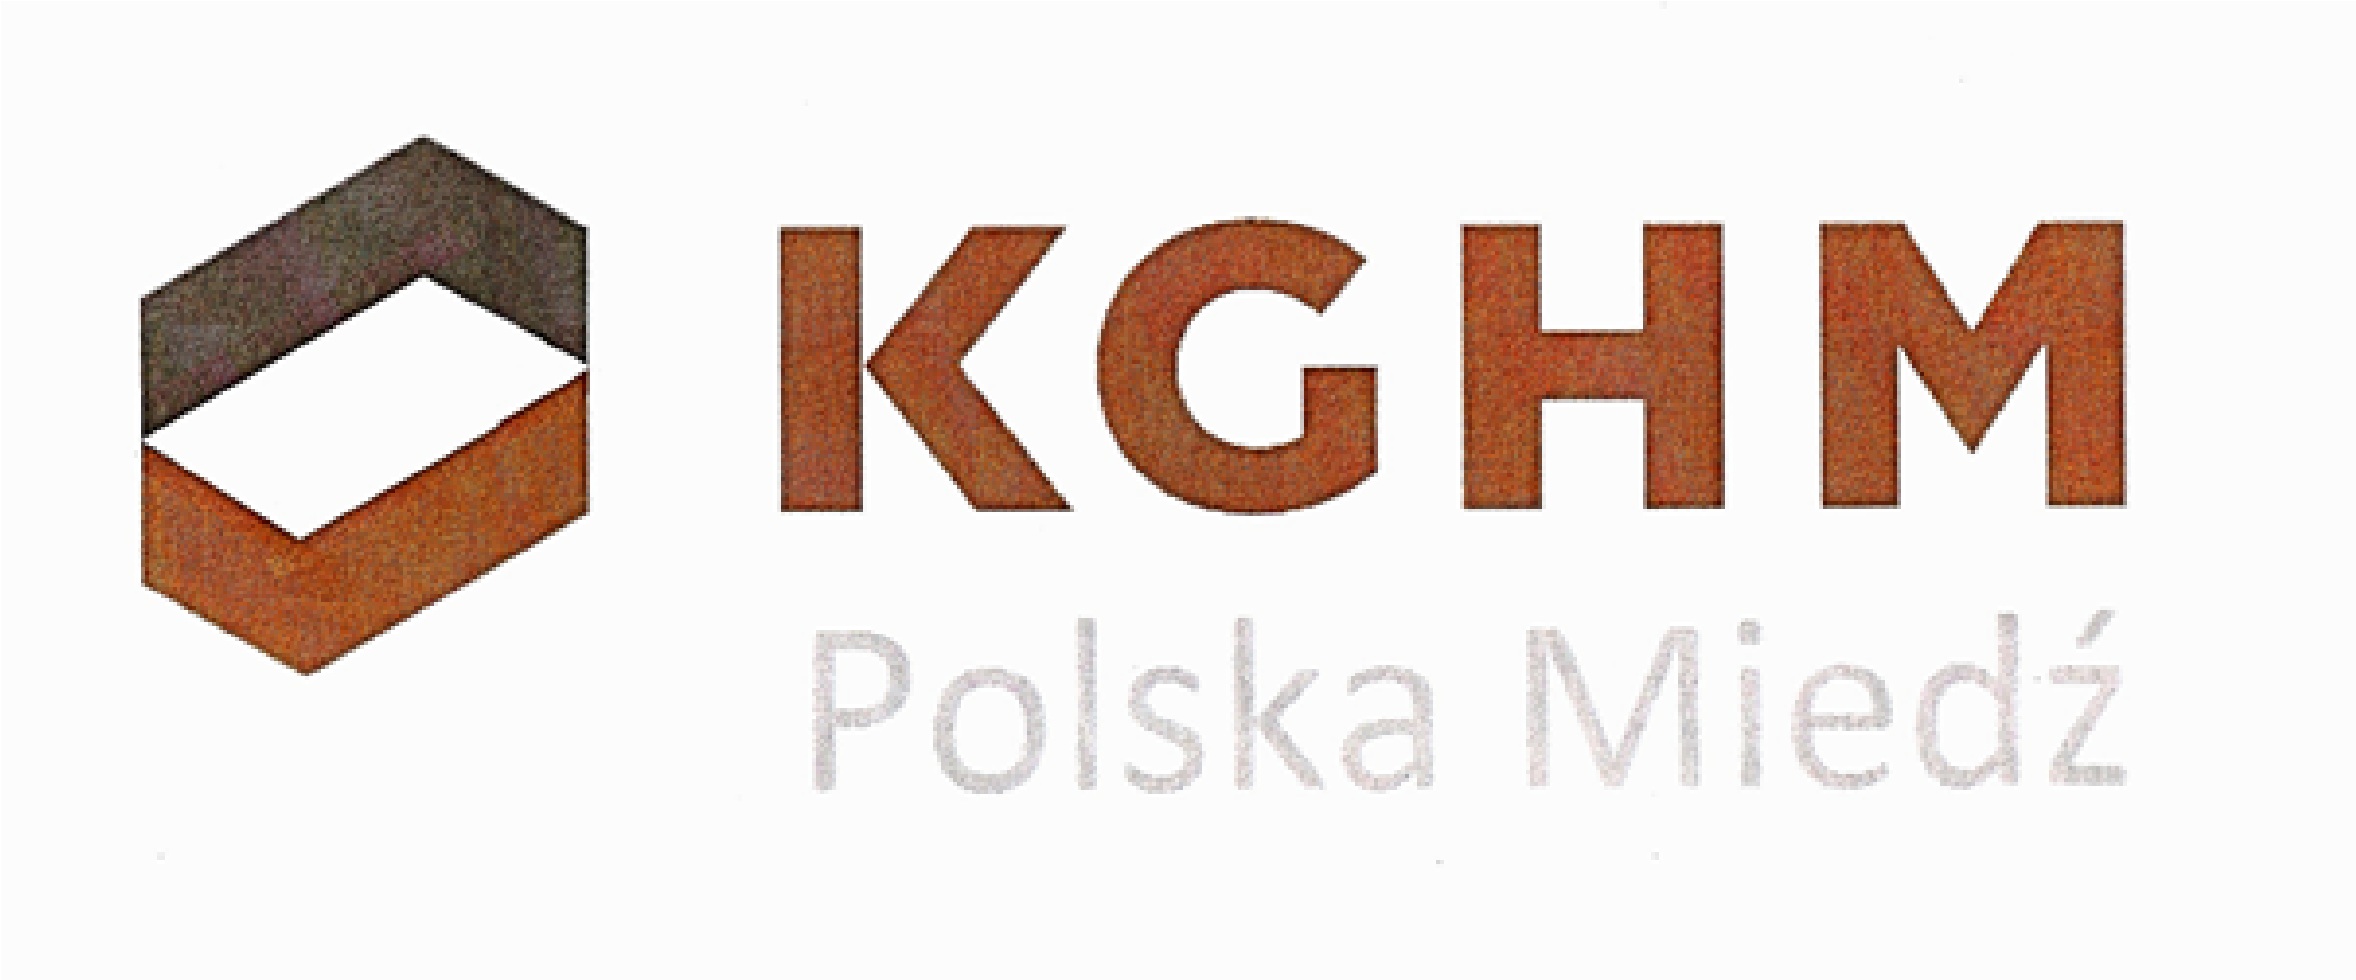 KGHM Polska miedź S.A. Logo photo - 1